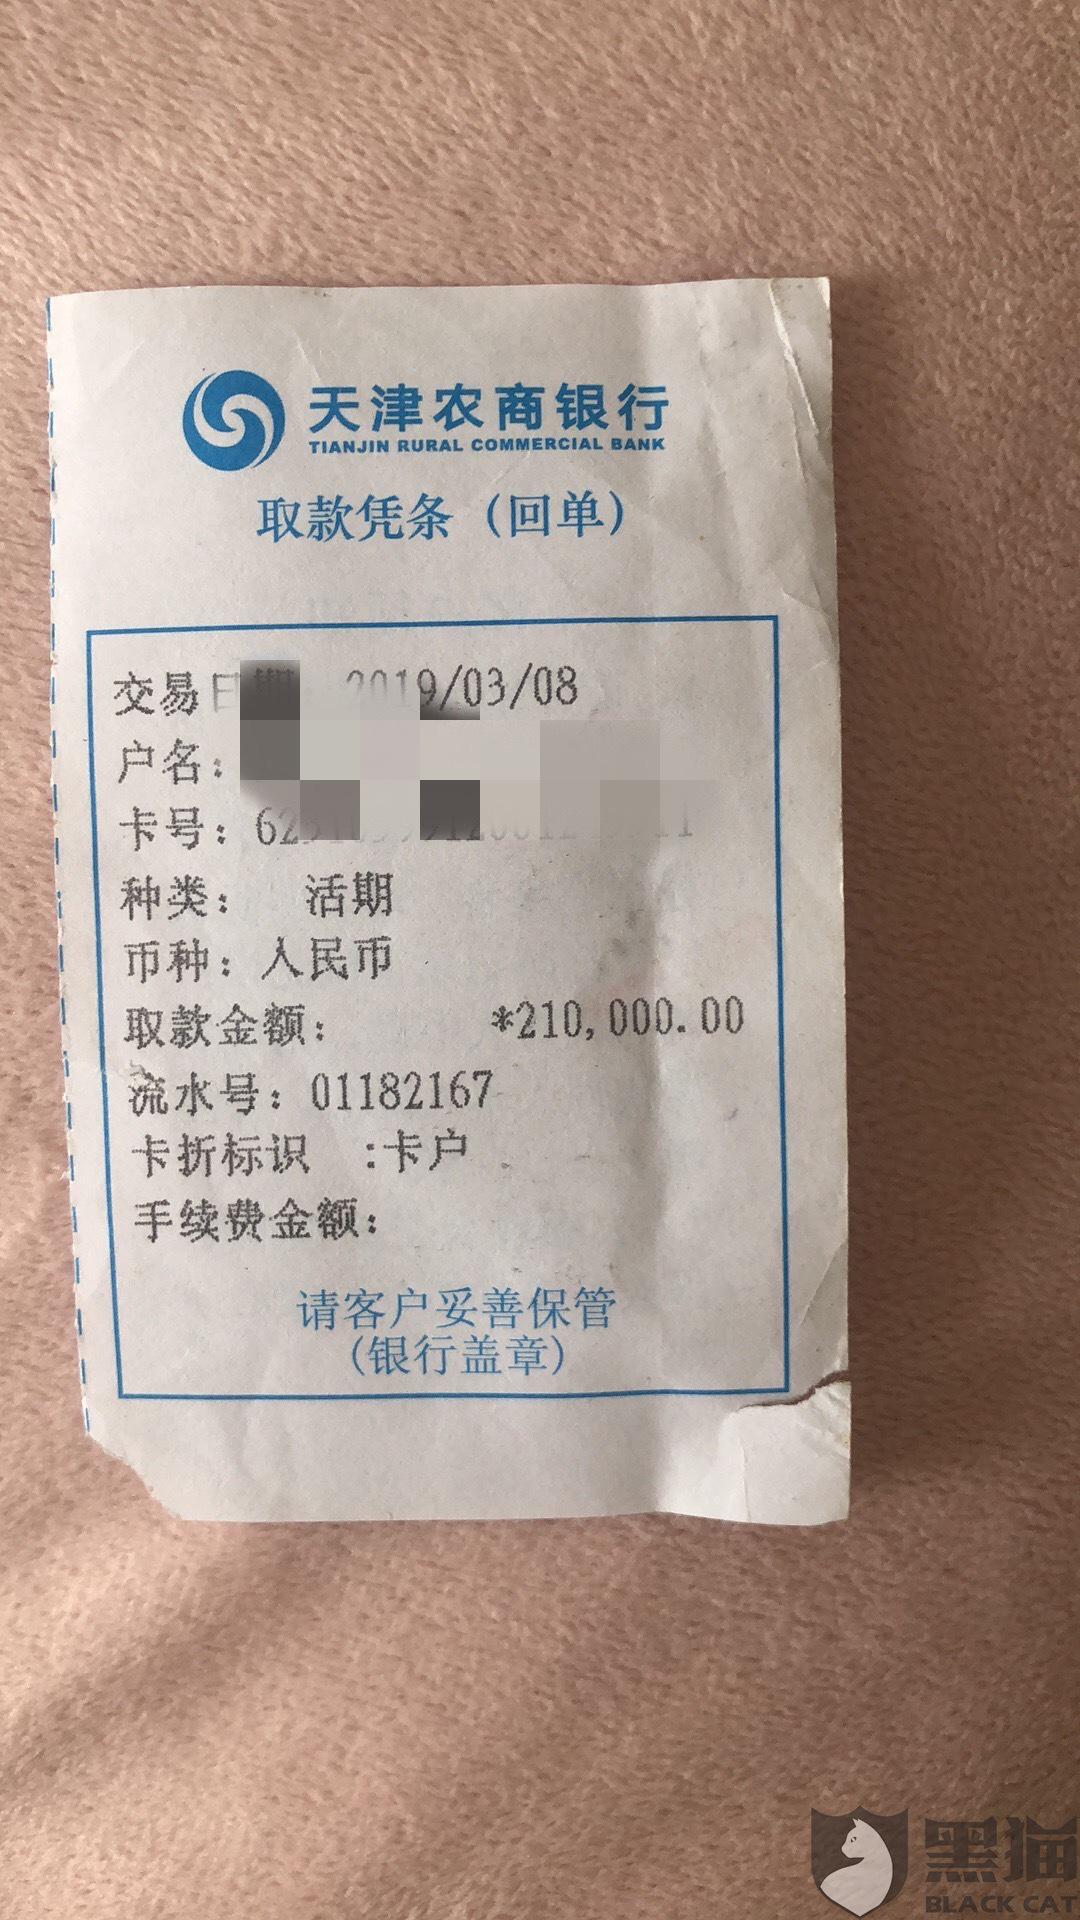 黑猫投诉:天津农商银行提供不了存款流向我本人授权的证明